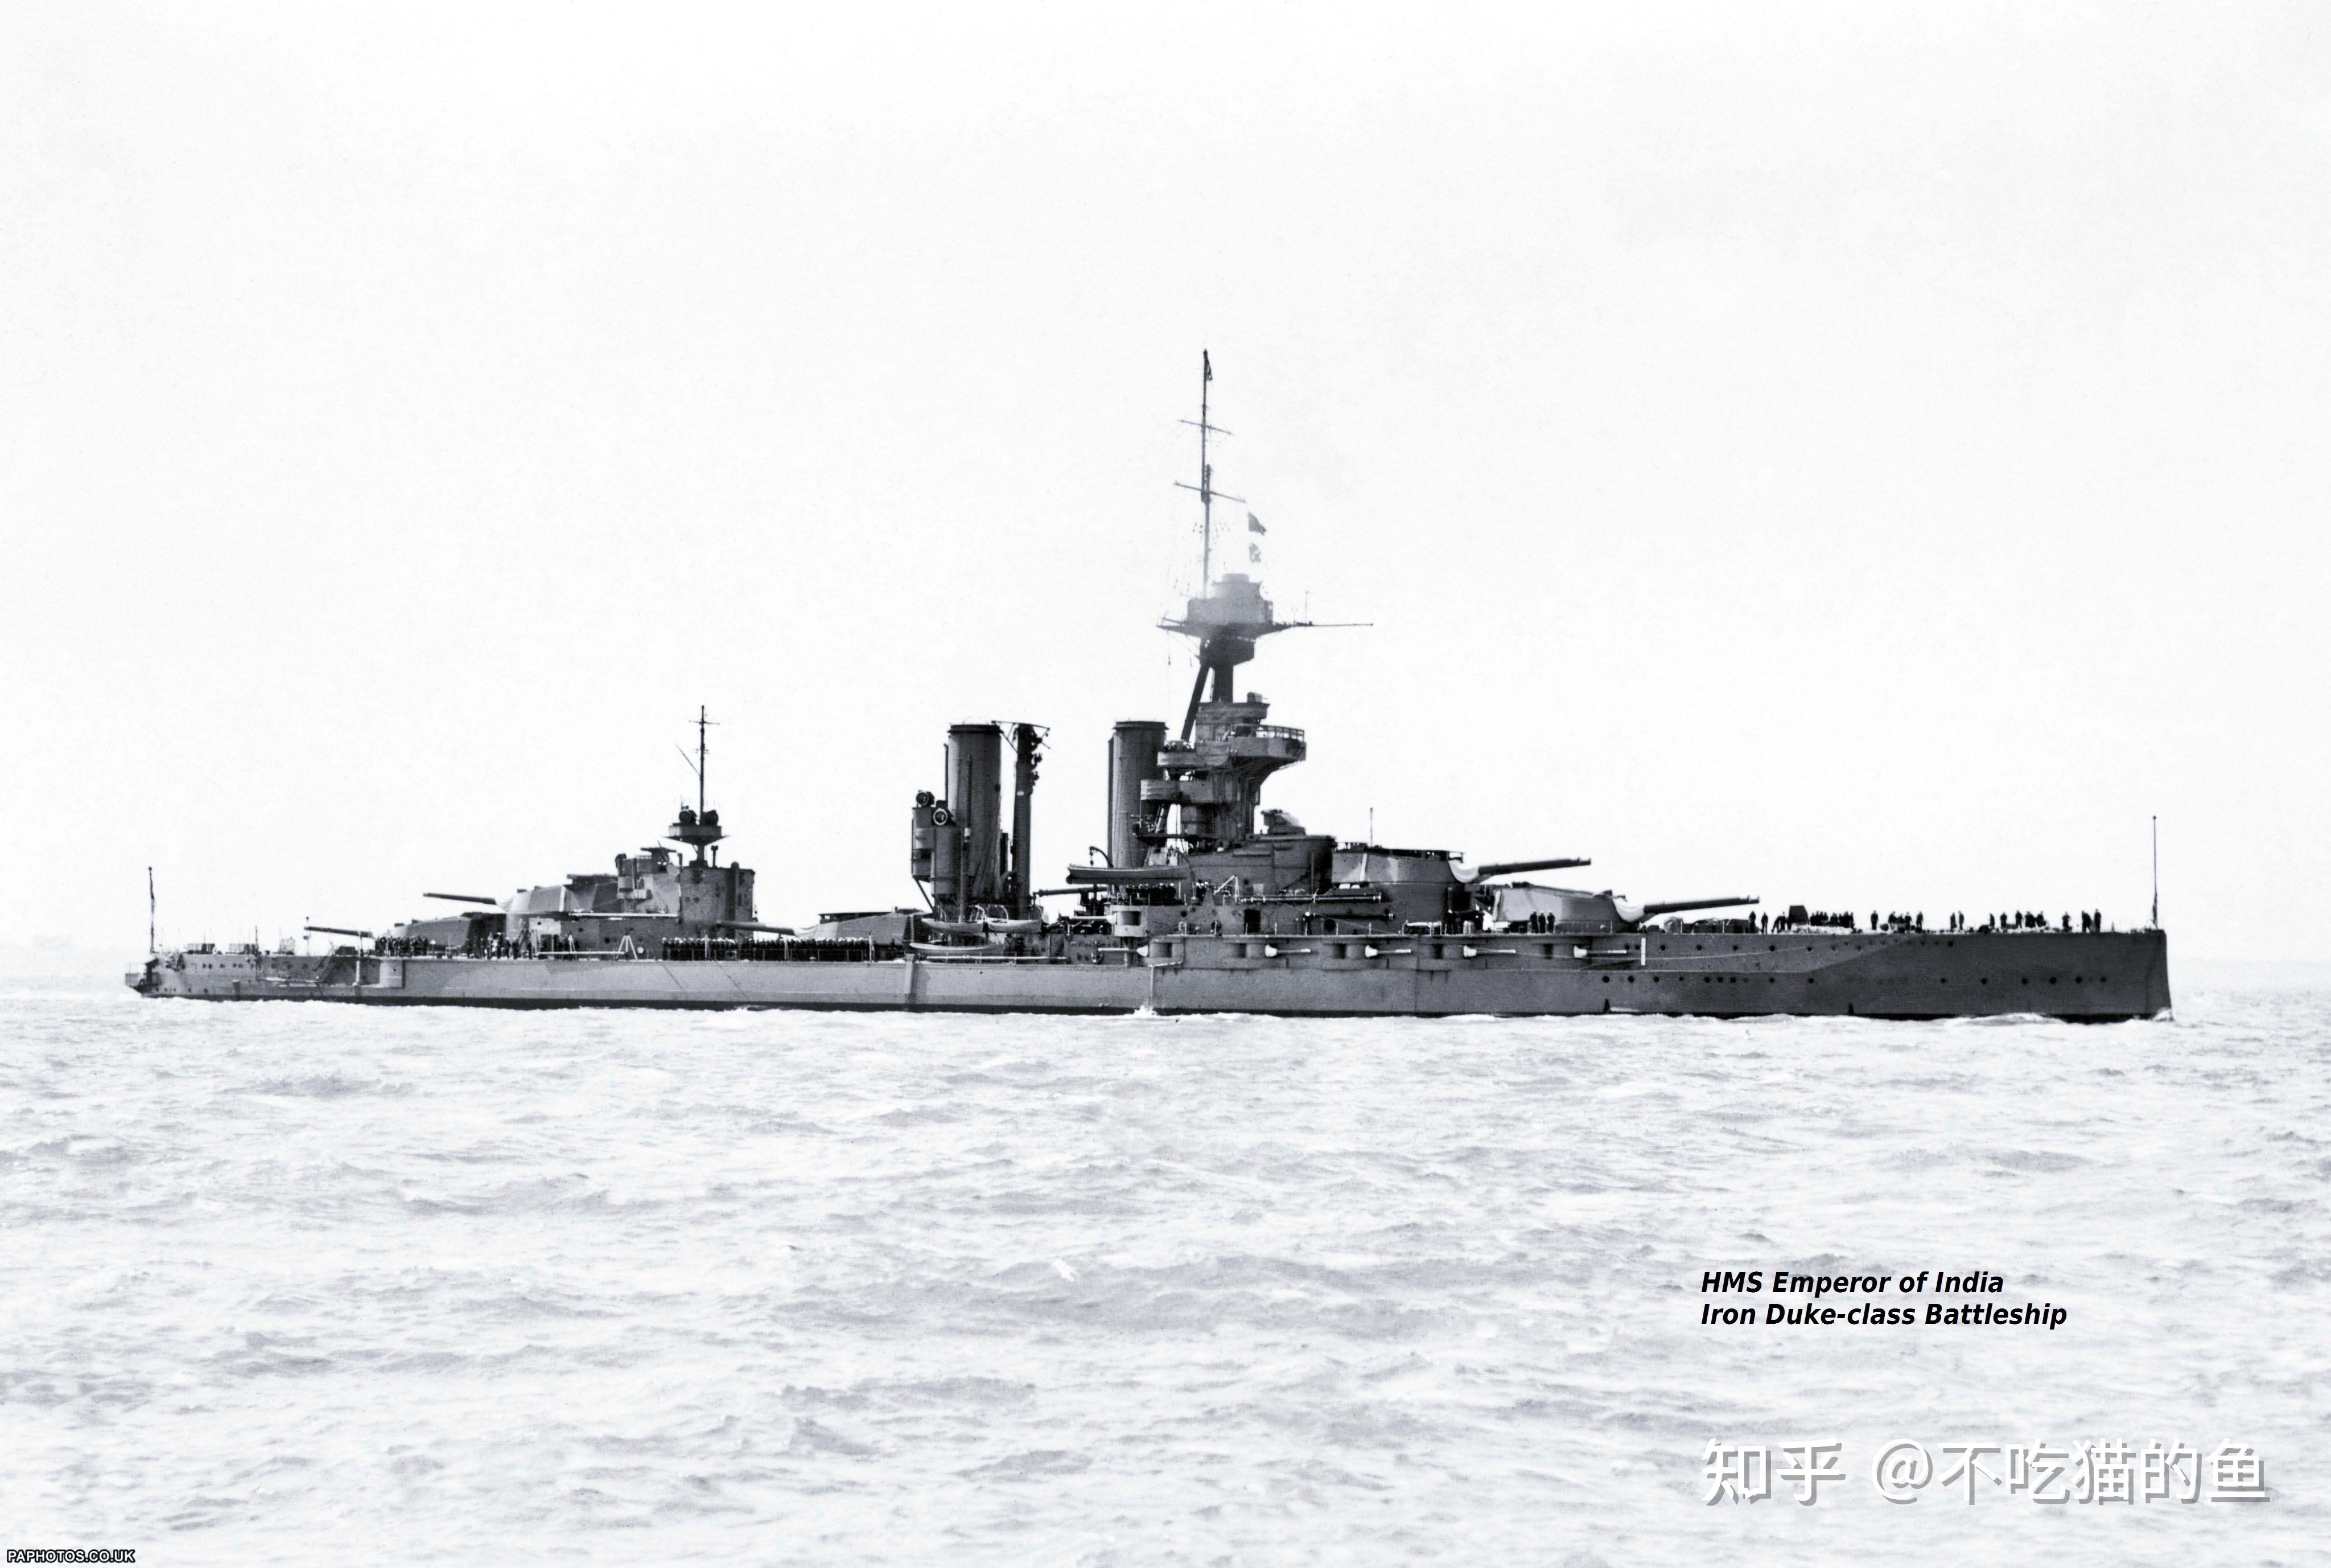 此时的战列舰共有16艘,包括1艘最老的,作为训练舰的铁公爵号;5艘很老